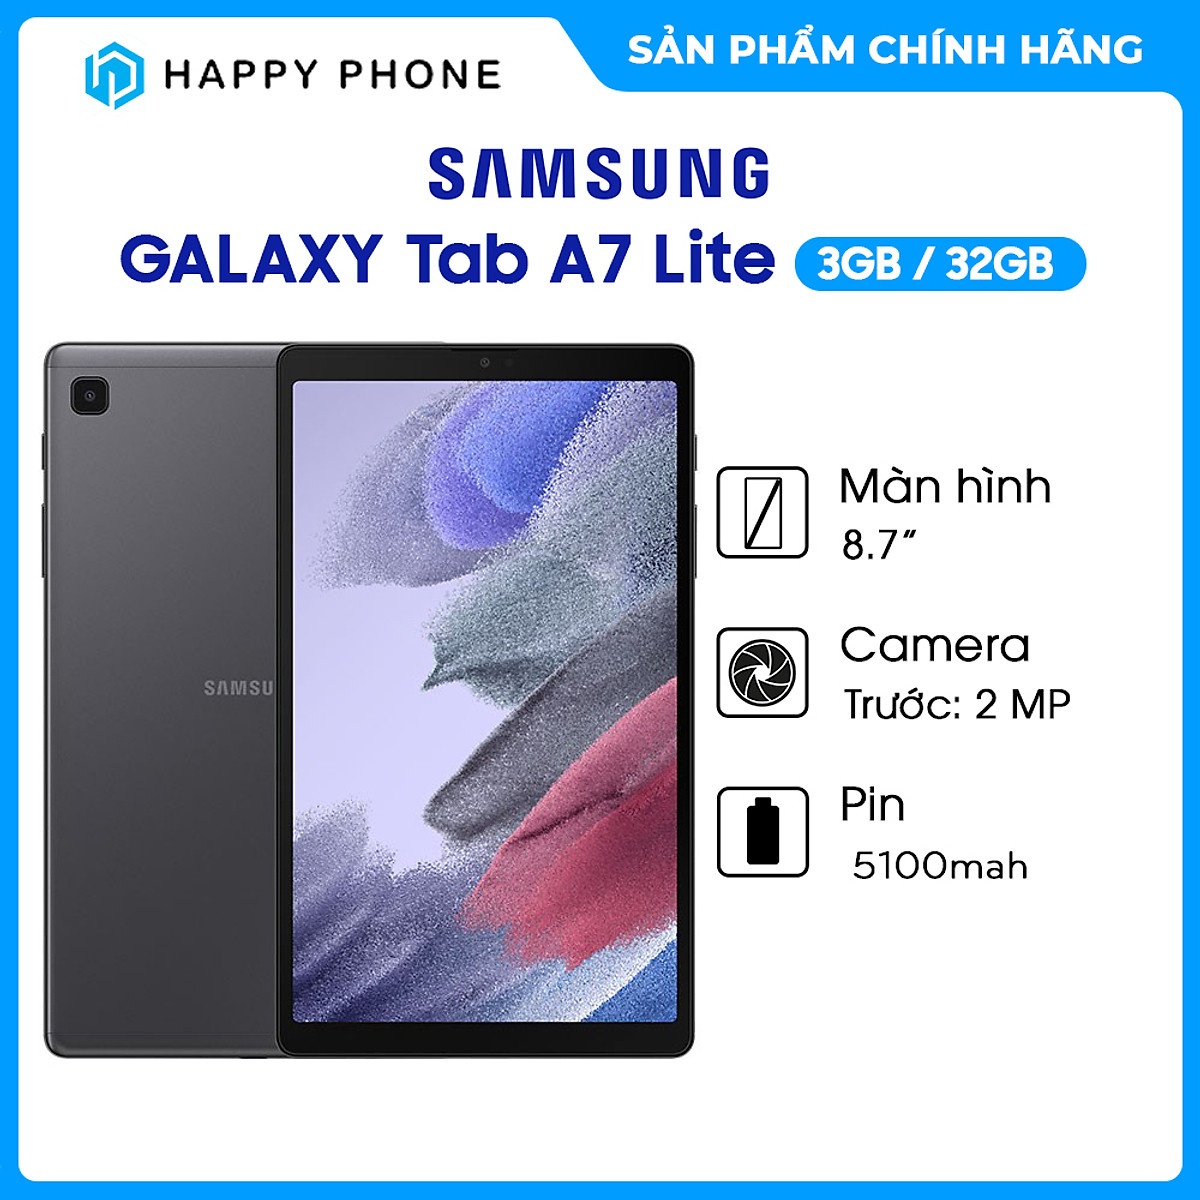 [Trả góp 0%] Máy tính bảng Samsung Galaxy Tab A7 Lite (3GB/32GB) - Hàng Chính Hãng, Mới 100%, Nguyên Seal...